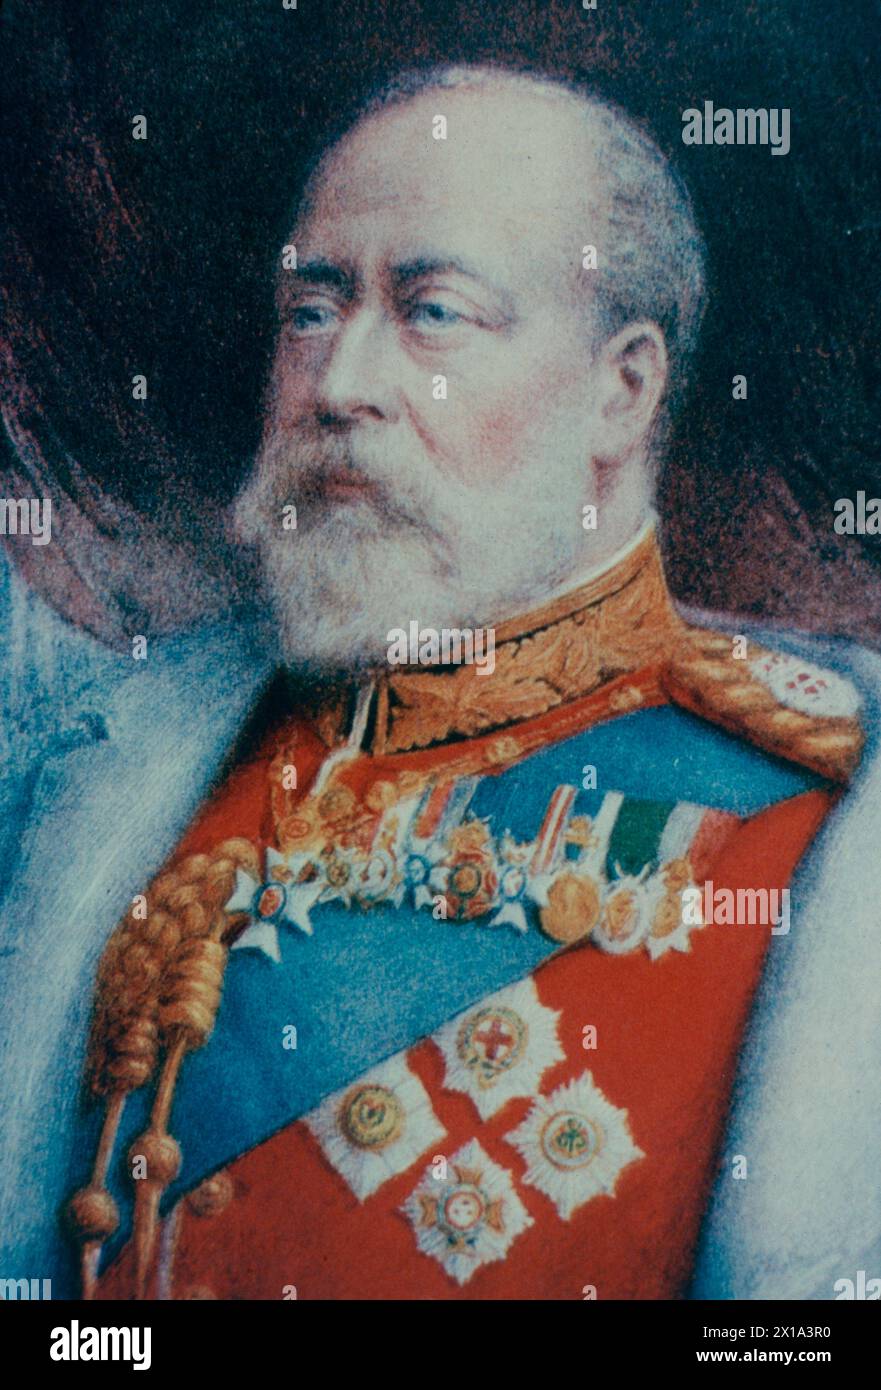 Portrait du roi Édouard VII d'Angleterre, Grande-Bretagne des années 1900 Banque D'Images